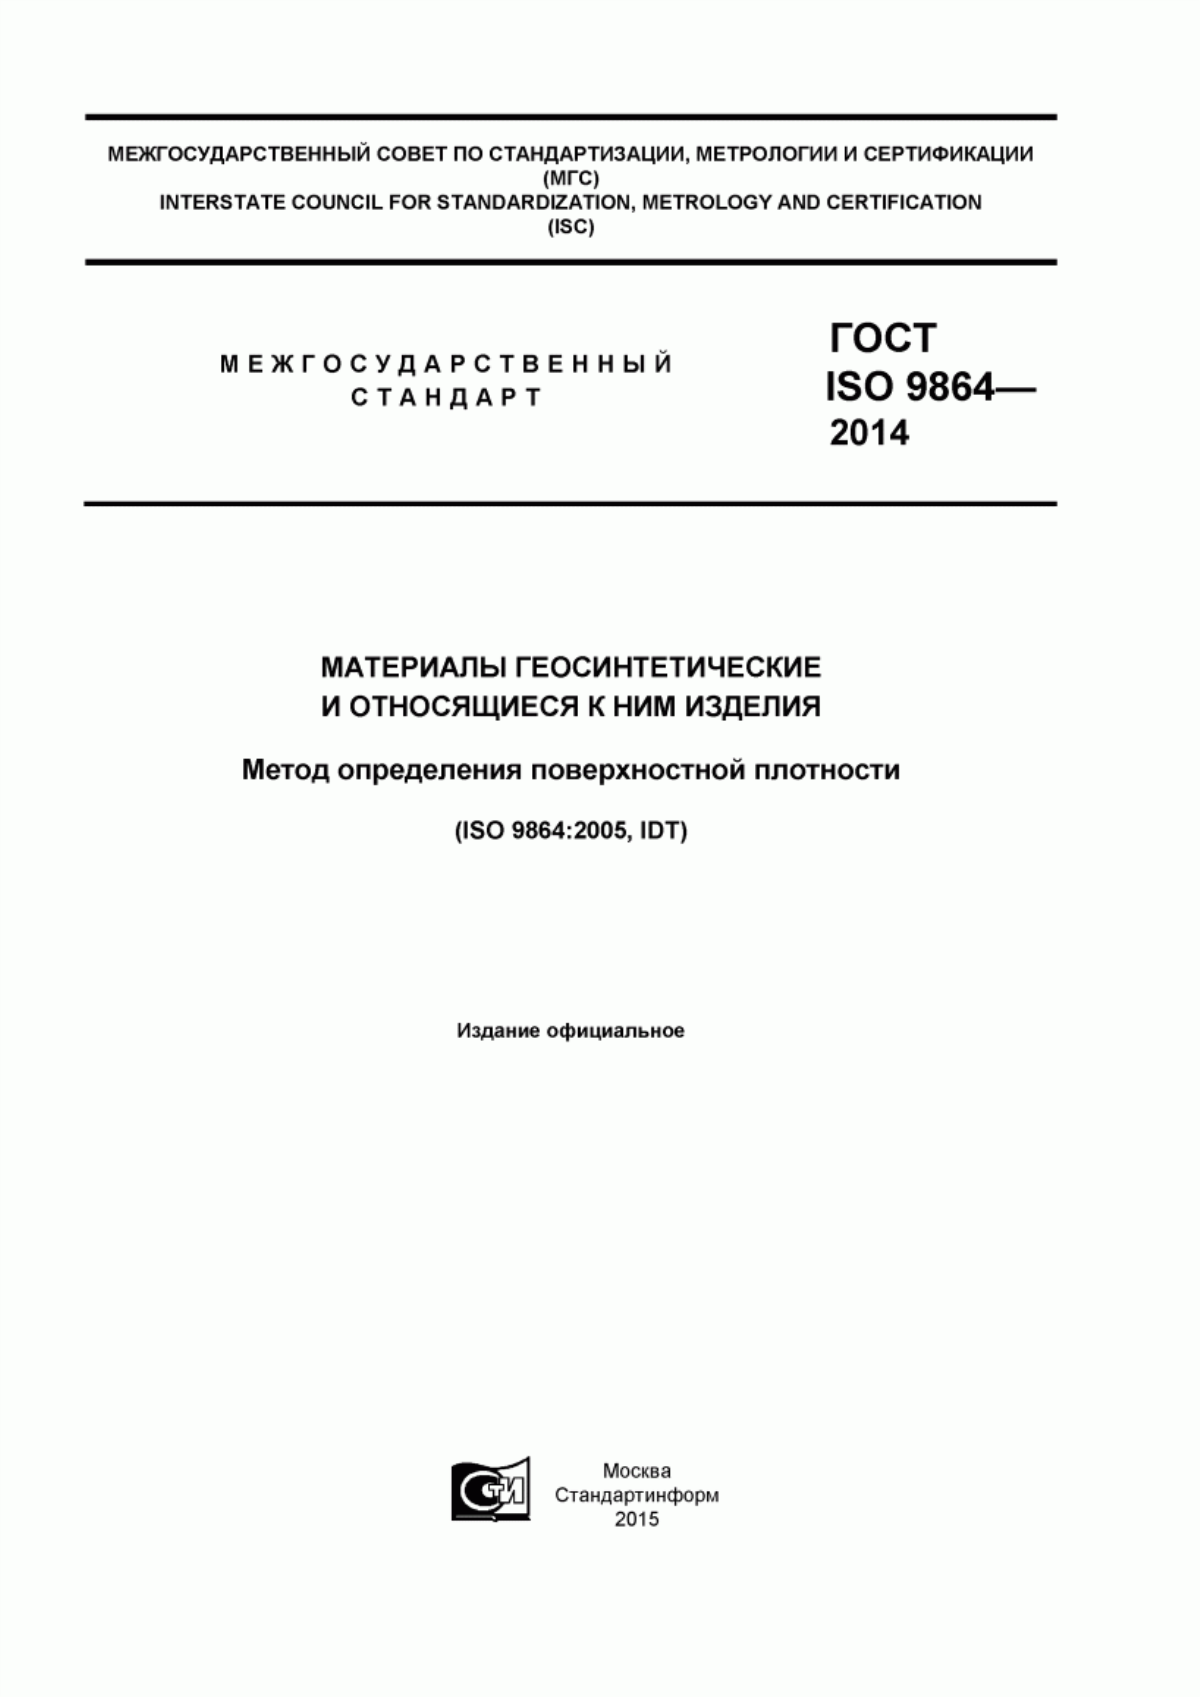 ГОСТ ISO 9864-2014 Материалы геосинтетические и относящиеся к ним изделия. Метод определения поверхностной плотности